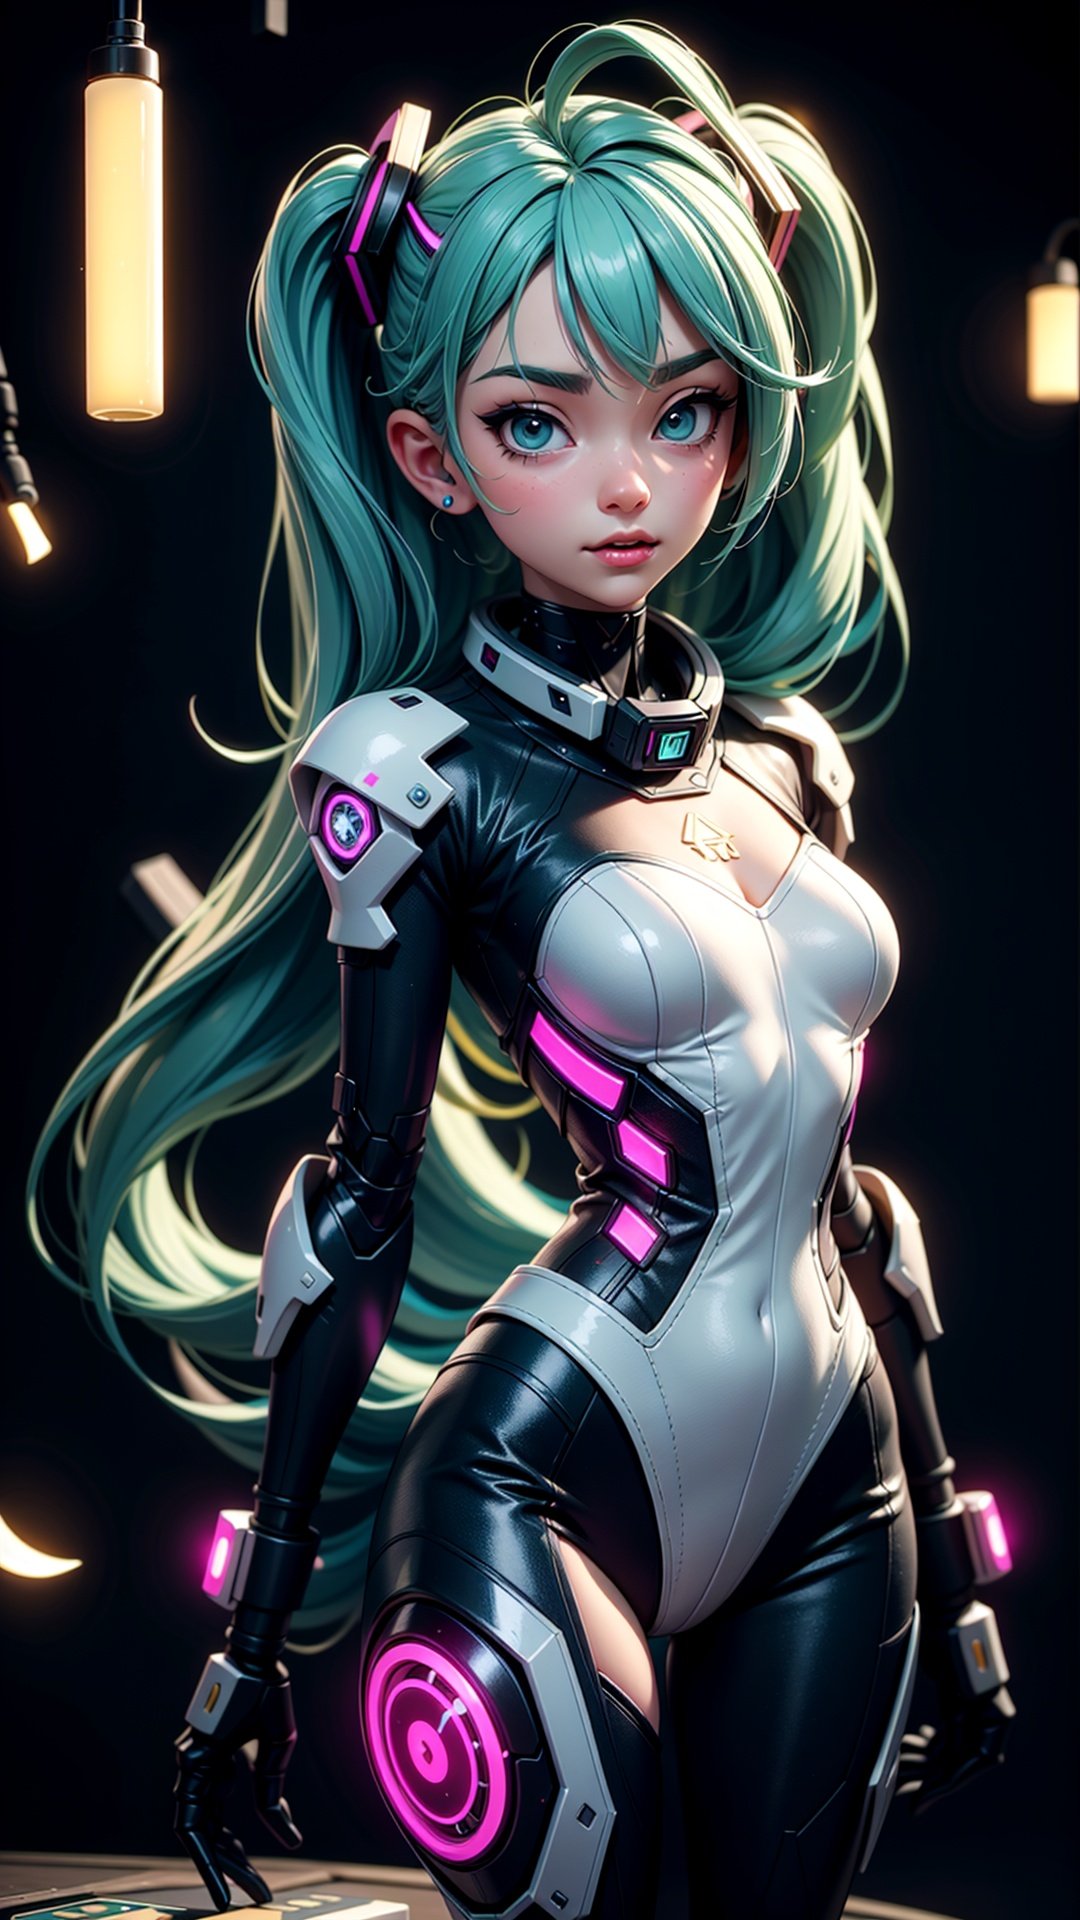 Hatsune Miku, Cyberpunk, bioware, cyberware, cybernetic, augmented, futuristic